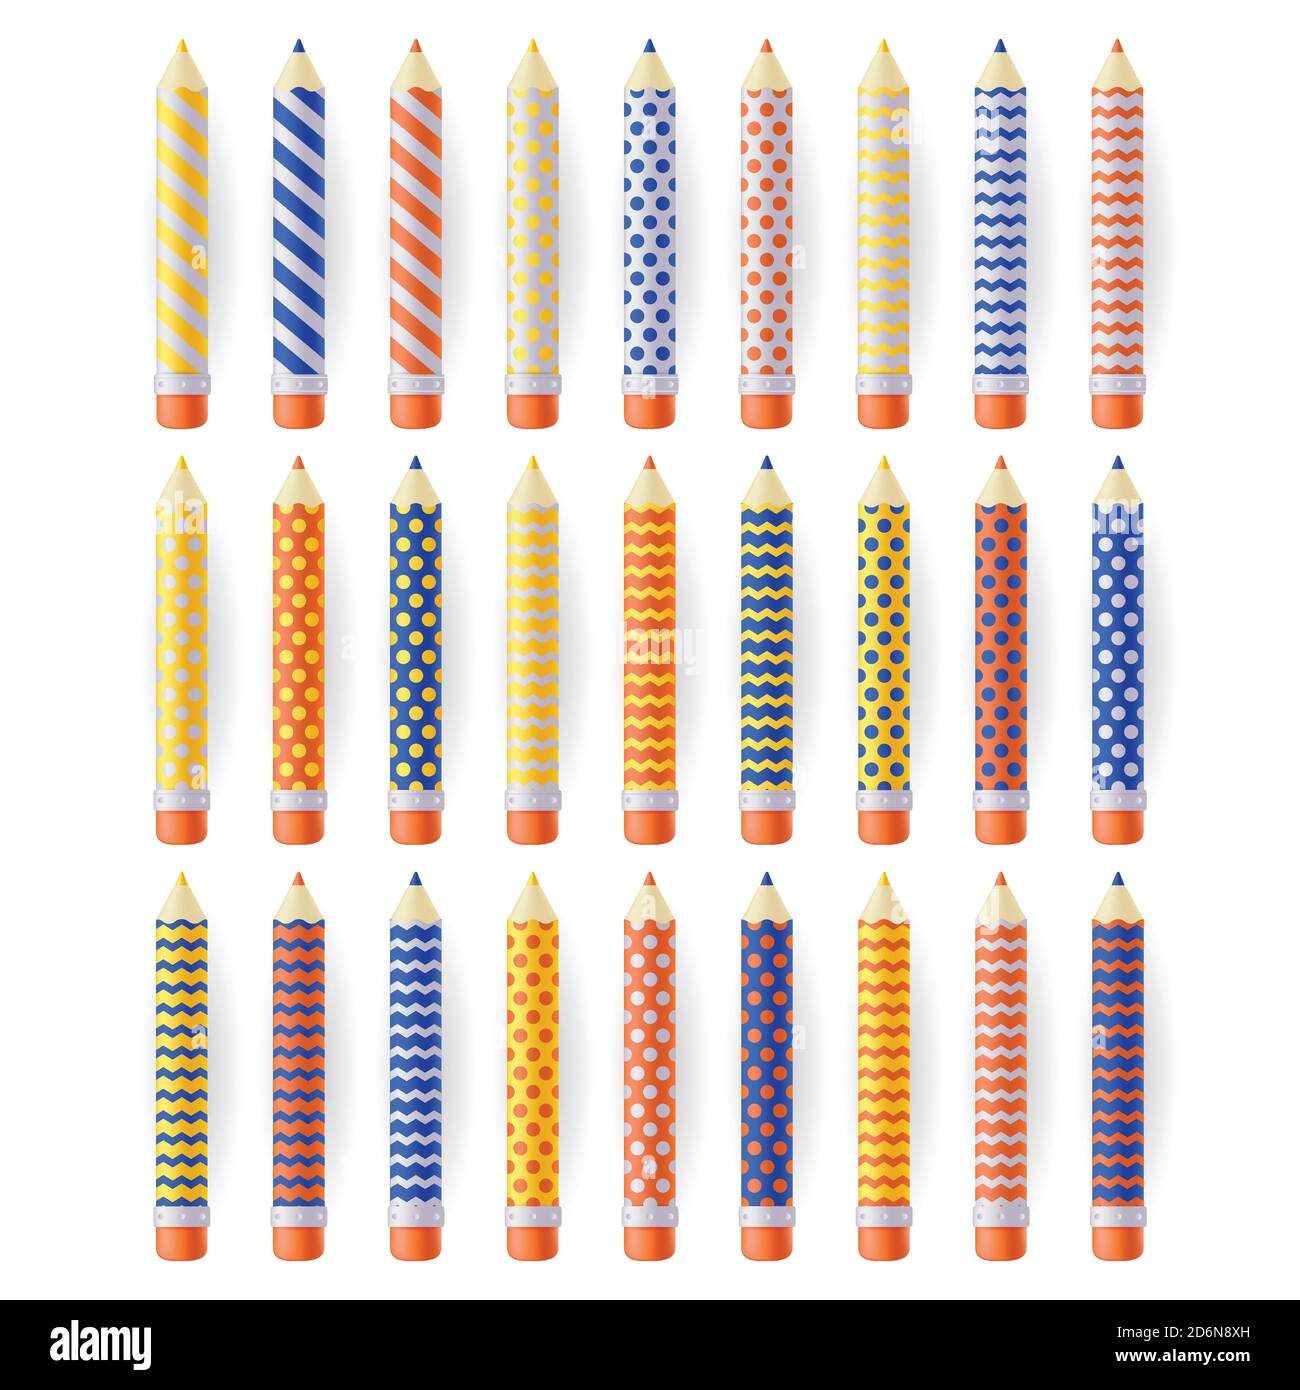 Crayons réalistes multicolores à motifs géométriques, isolés sur fond blanc. Kit de fournitures d'art pour l'éducation scolaire. Illustration 3d vectorielle. Illustration de Vecteur